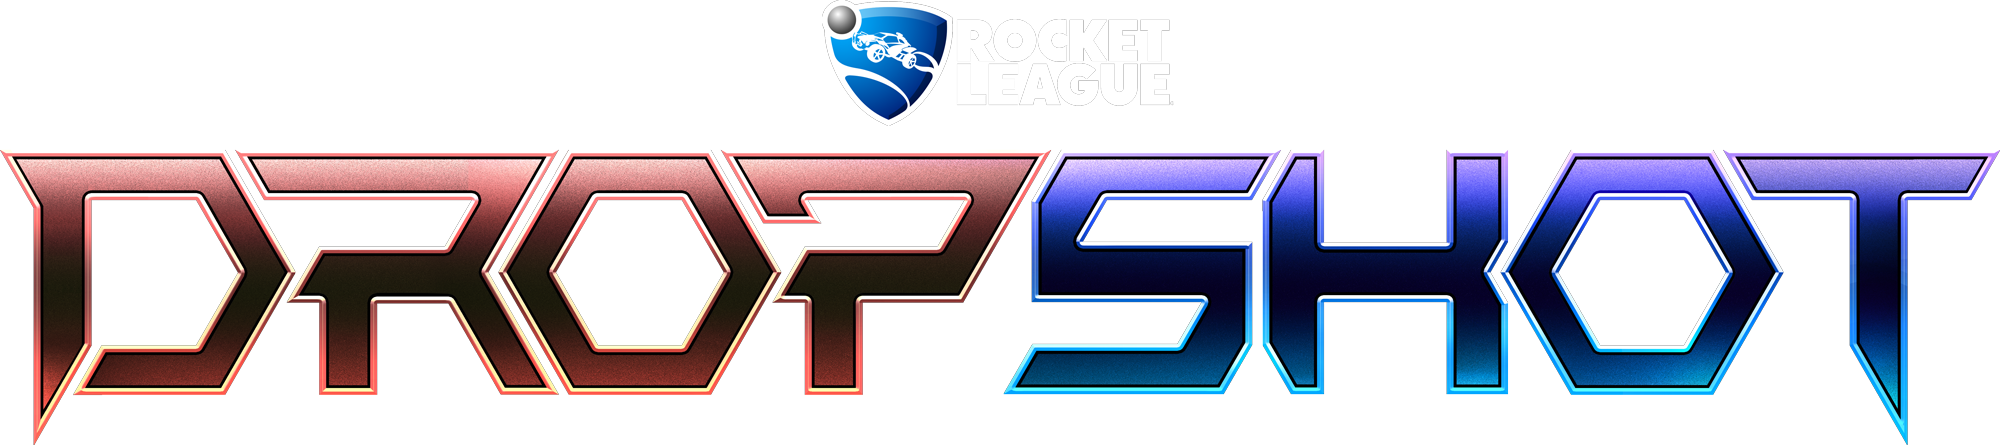 Dropshot Logo - Rocket League (2000x445), Png Download